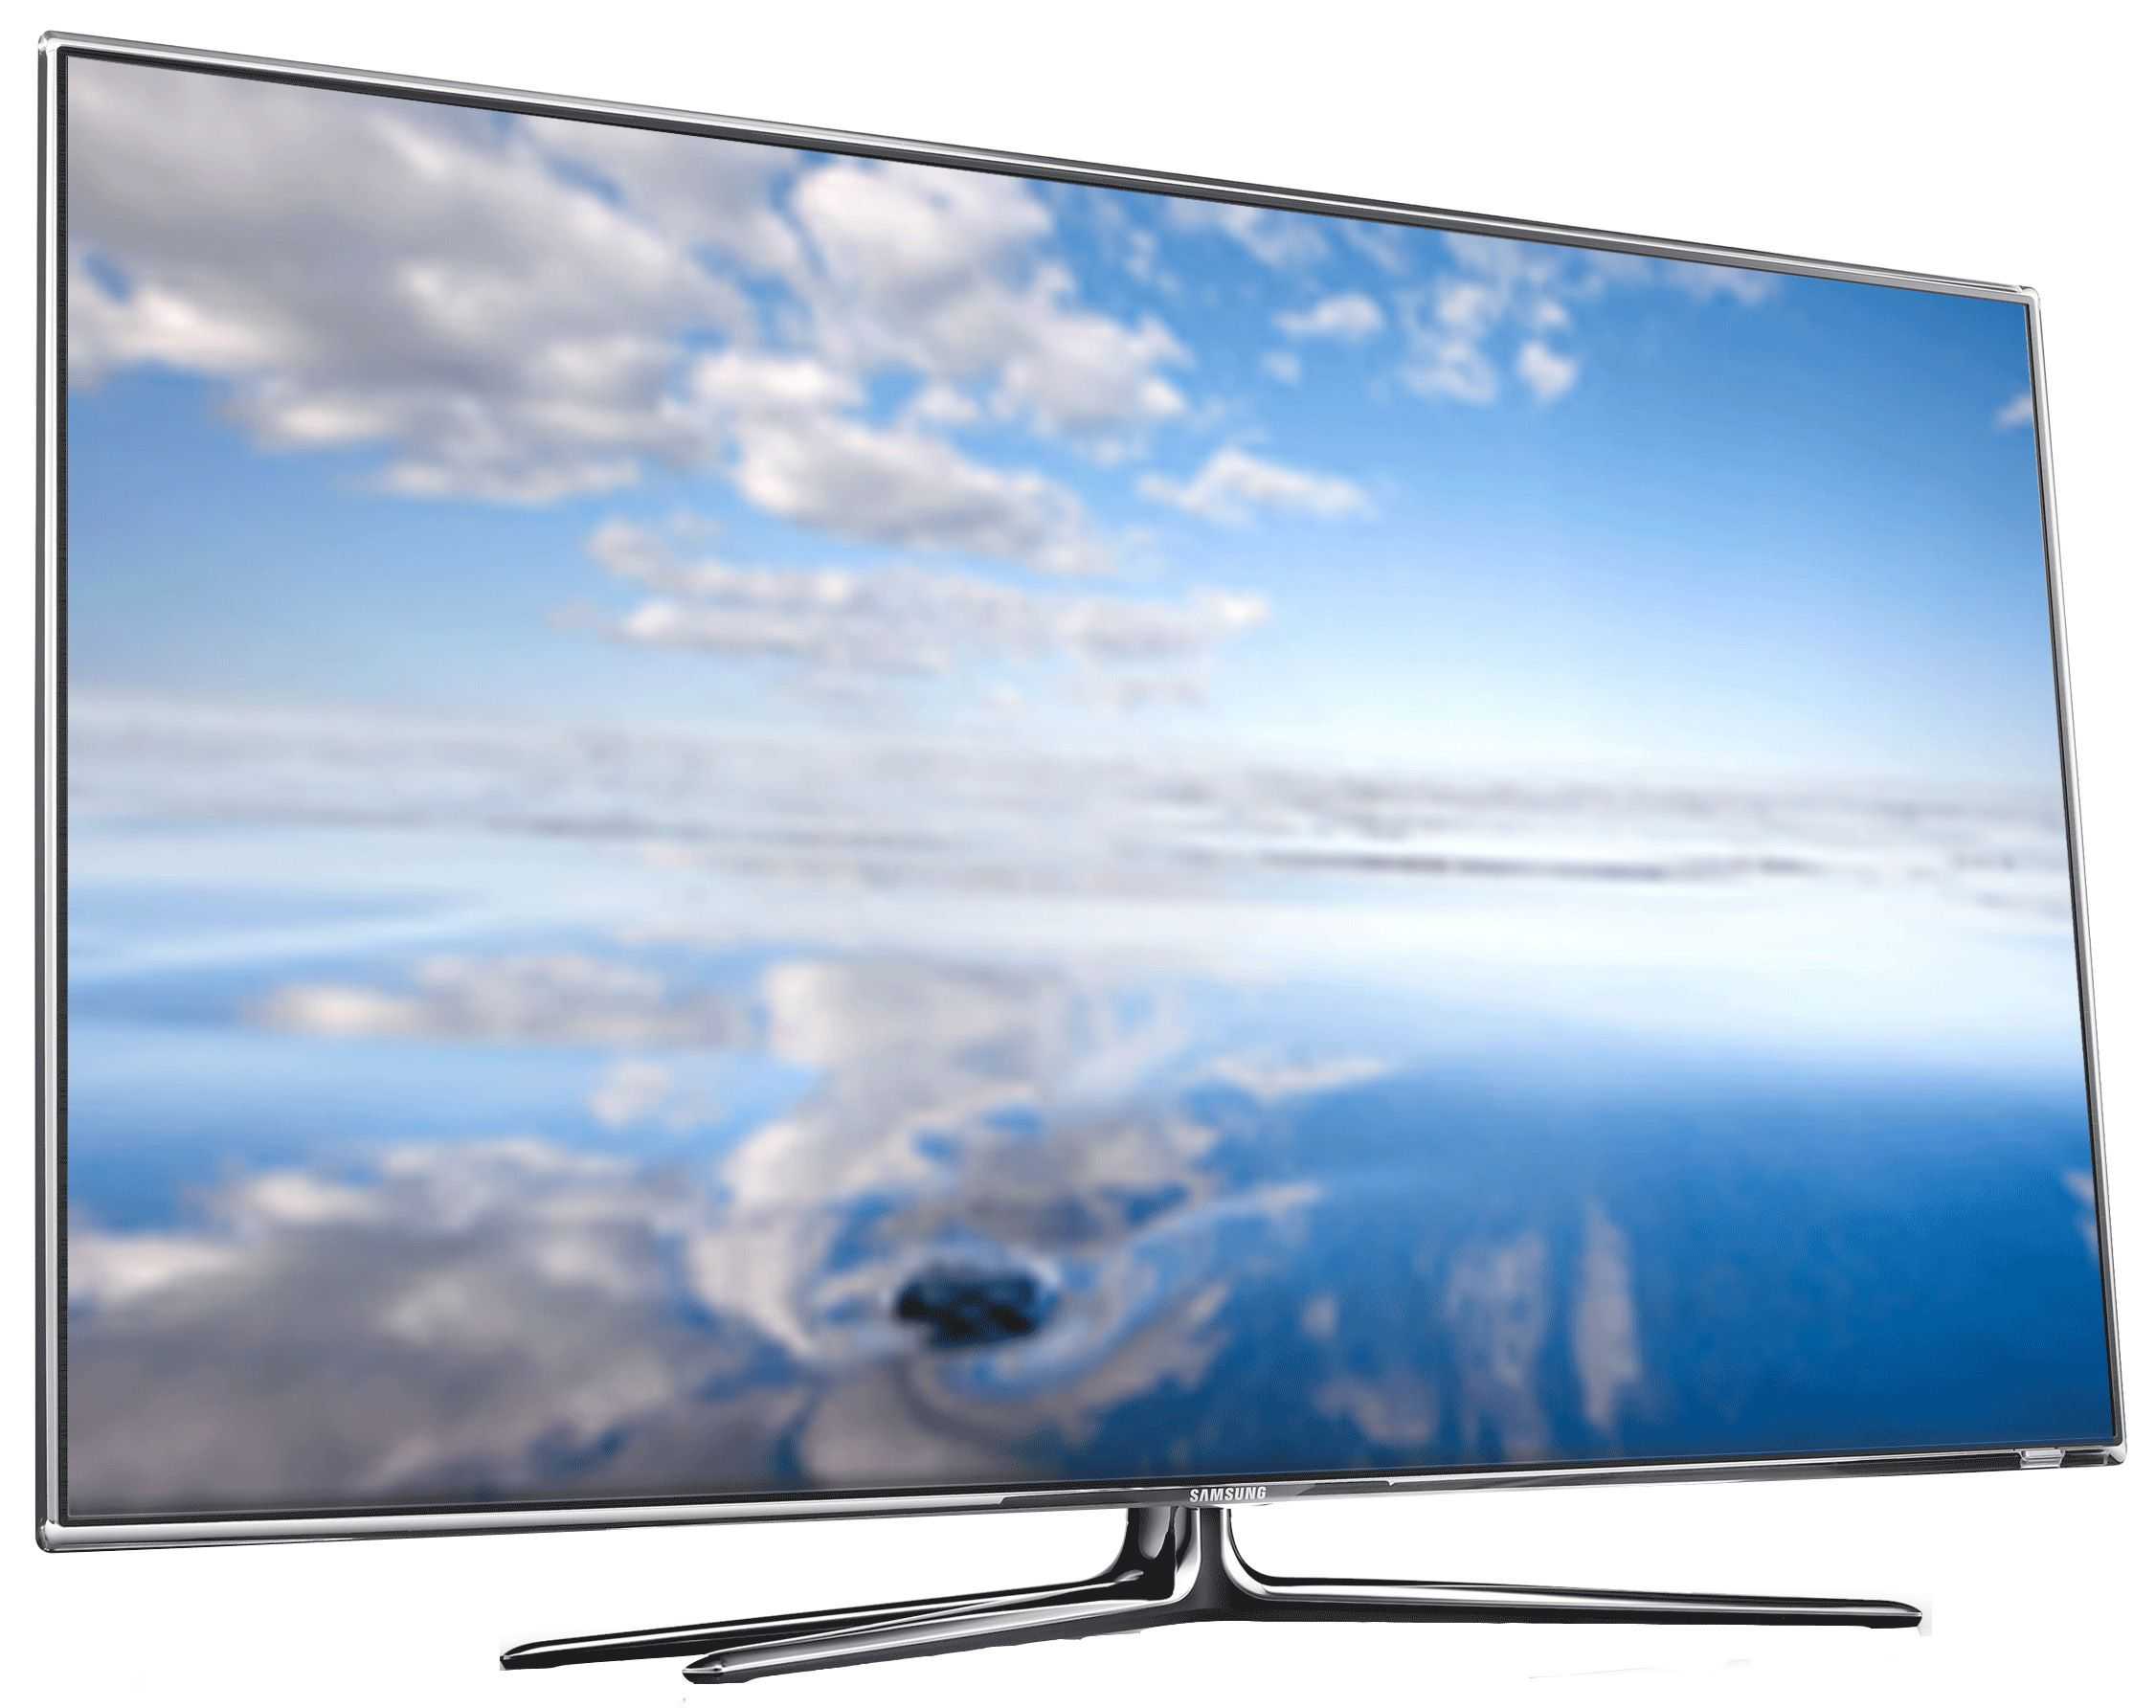 Телевизор Samsung UE50HU7000 - подробные характеристики обзоры видео фото Цены в интернет-магазинах где можно купить телевизор Samsung UE50HU7000